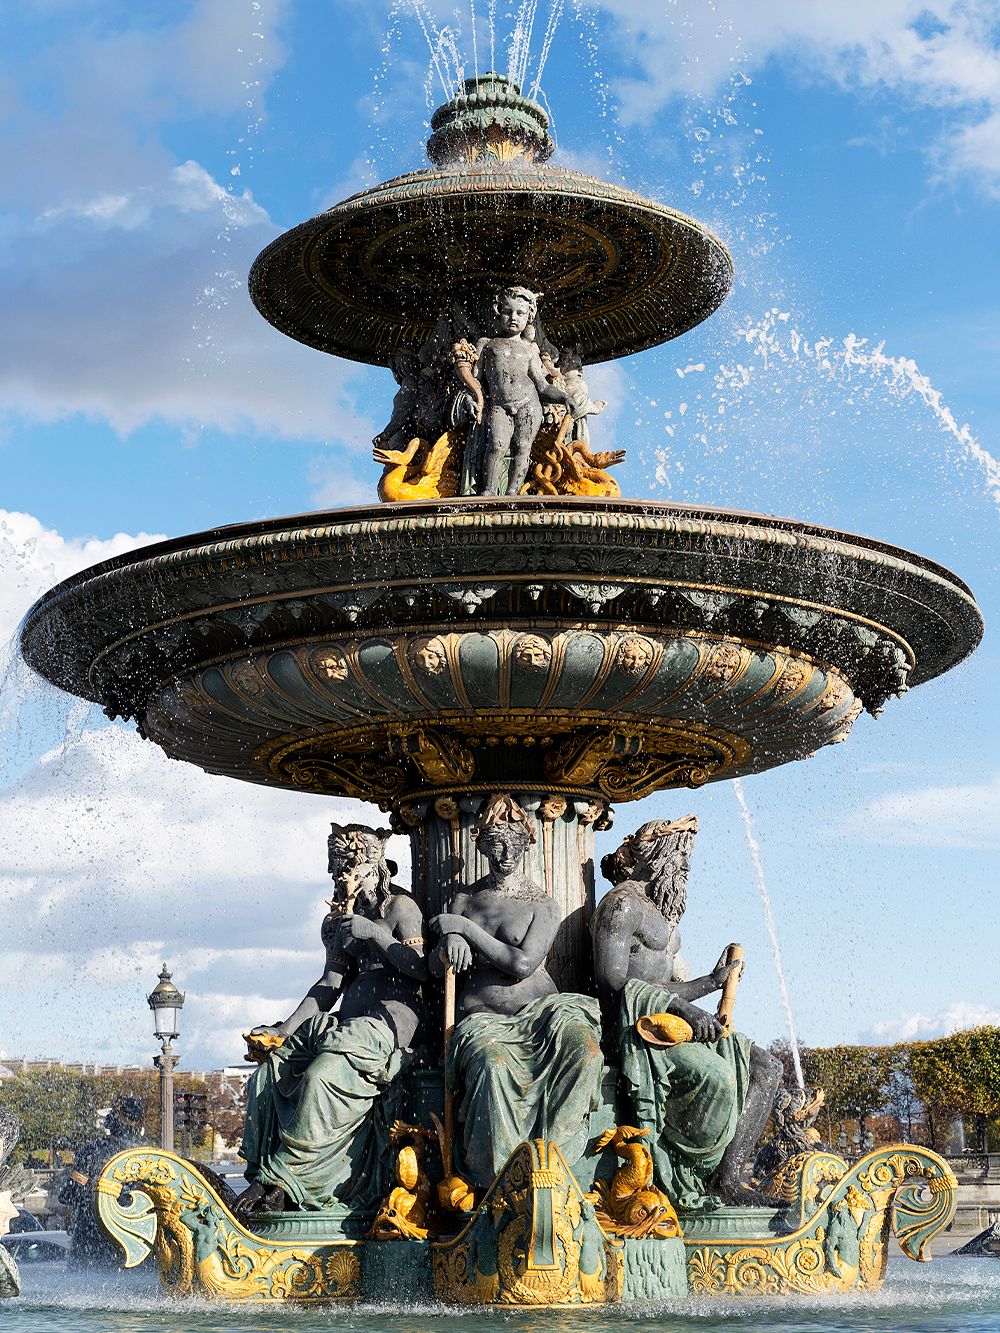 The Fontaine des Mers fountain in Place de la Concorde, Paris